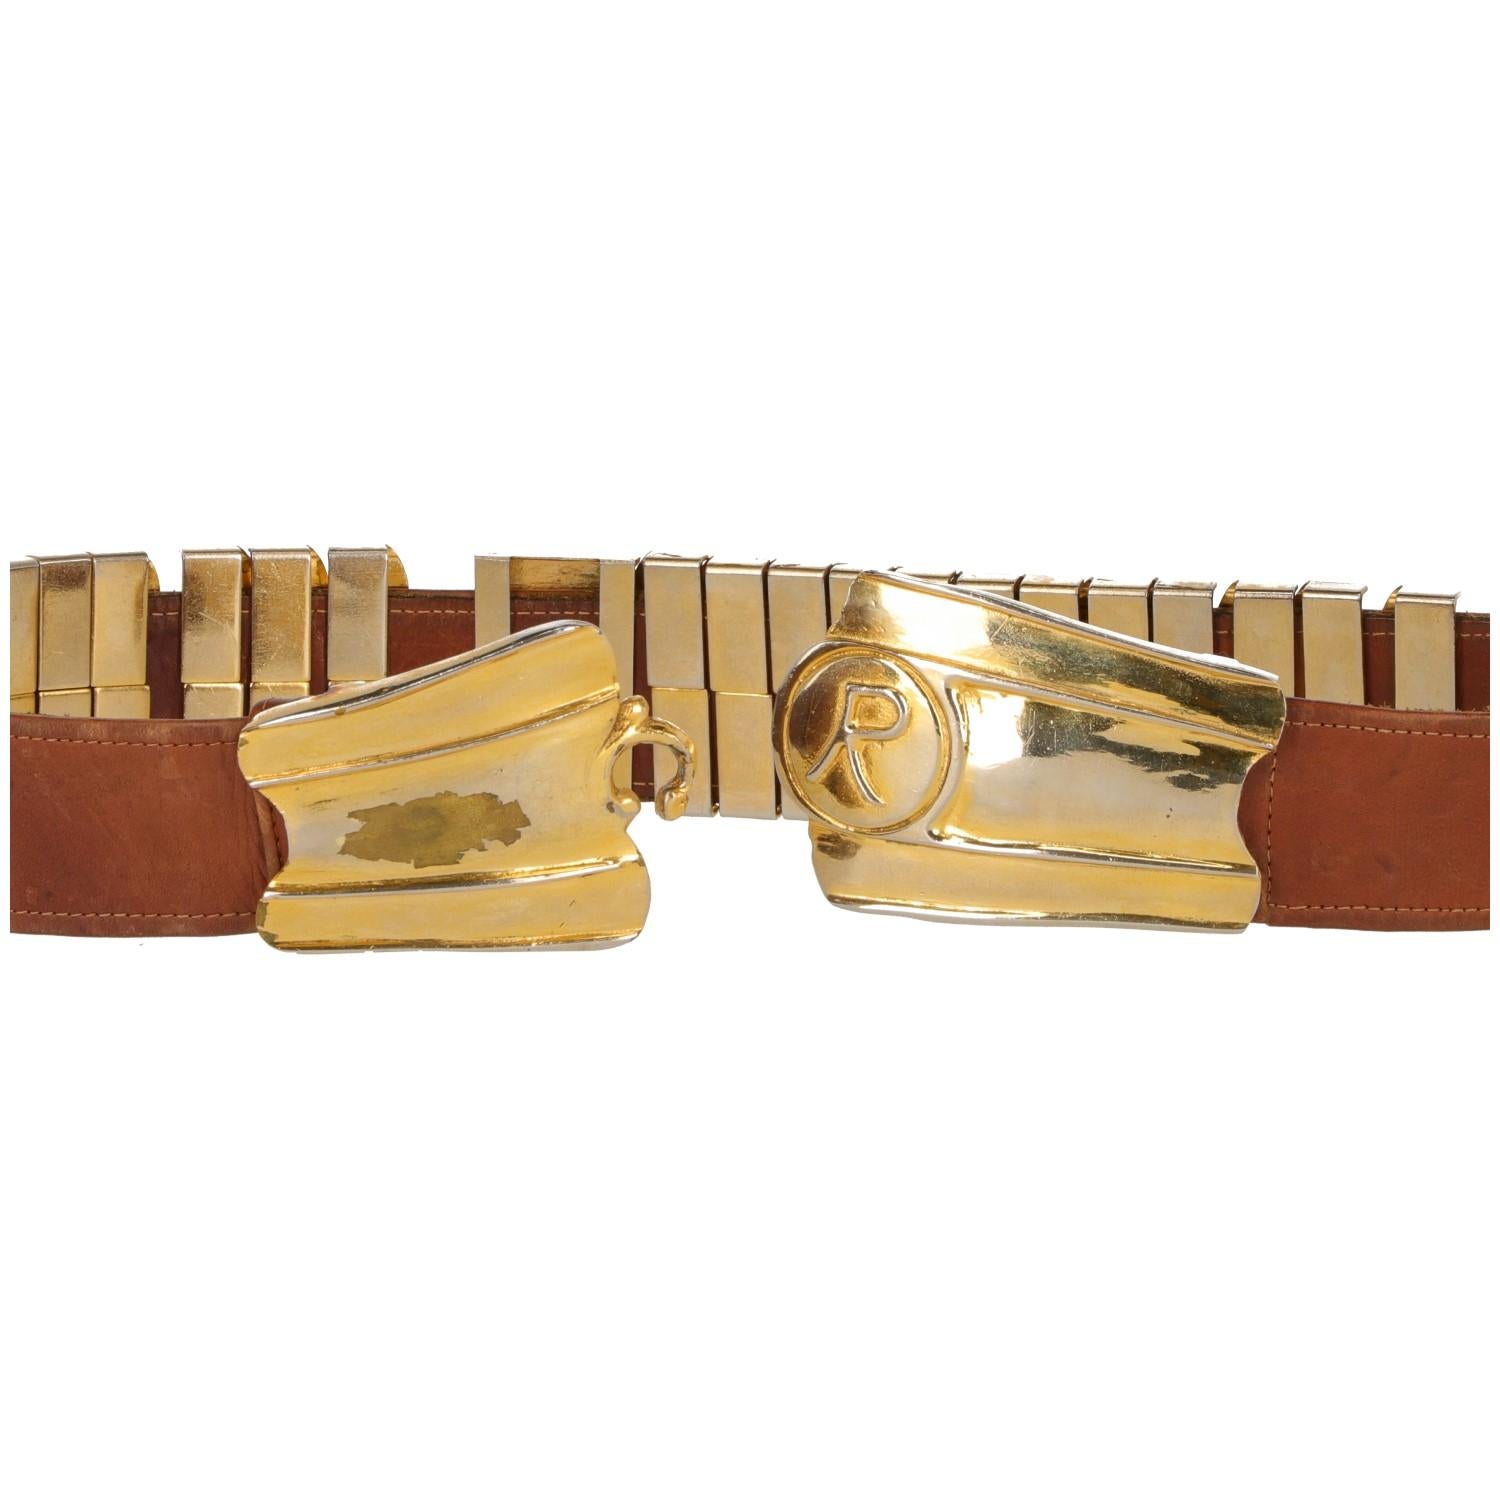 Der stilvolle Gürtel Roberta di Camerino wird in Italien in den 1960er Jahren hergestellt. Der Gürtel aus camelfarbenem/braunem Leder hat eine elegante goldfarbene Metallschnalle mit dem Maison-Logo 